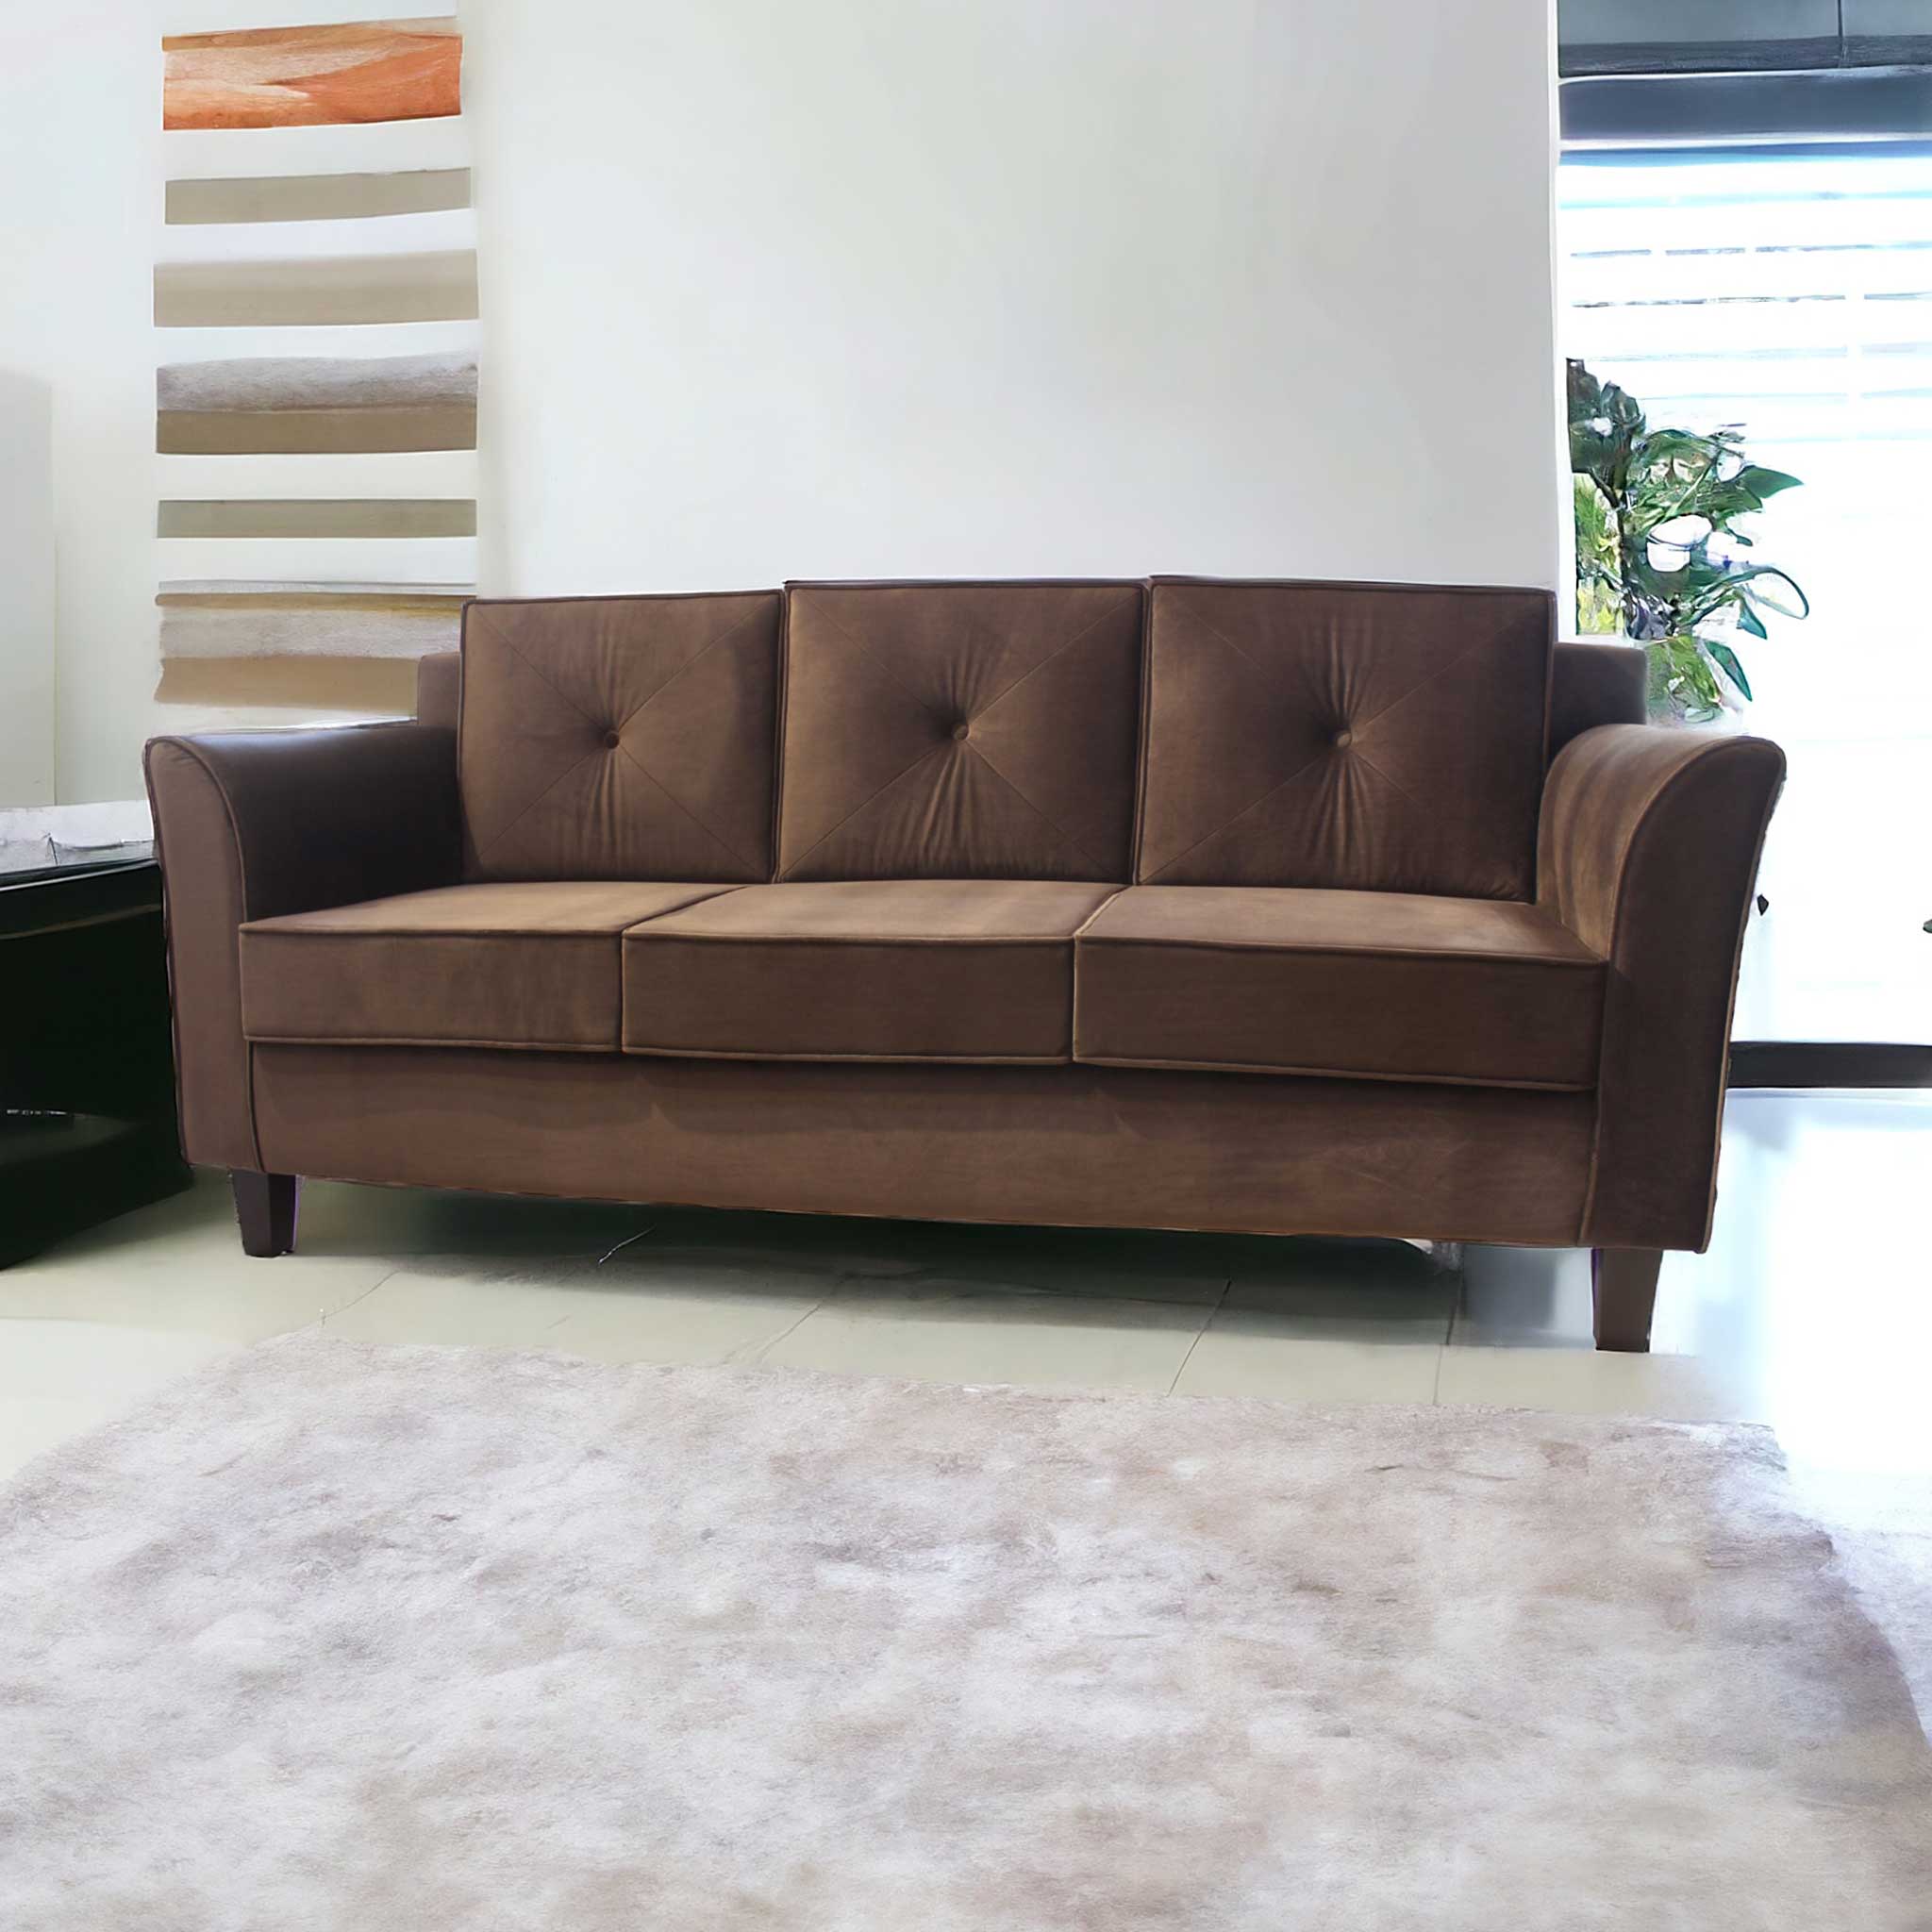 Prime sofa